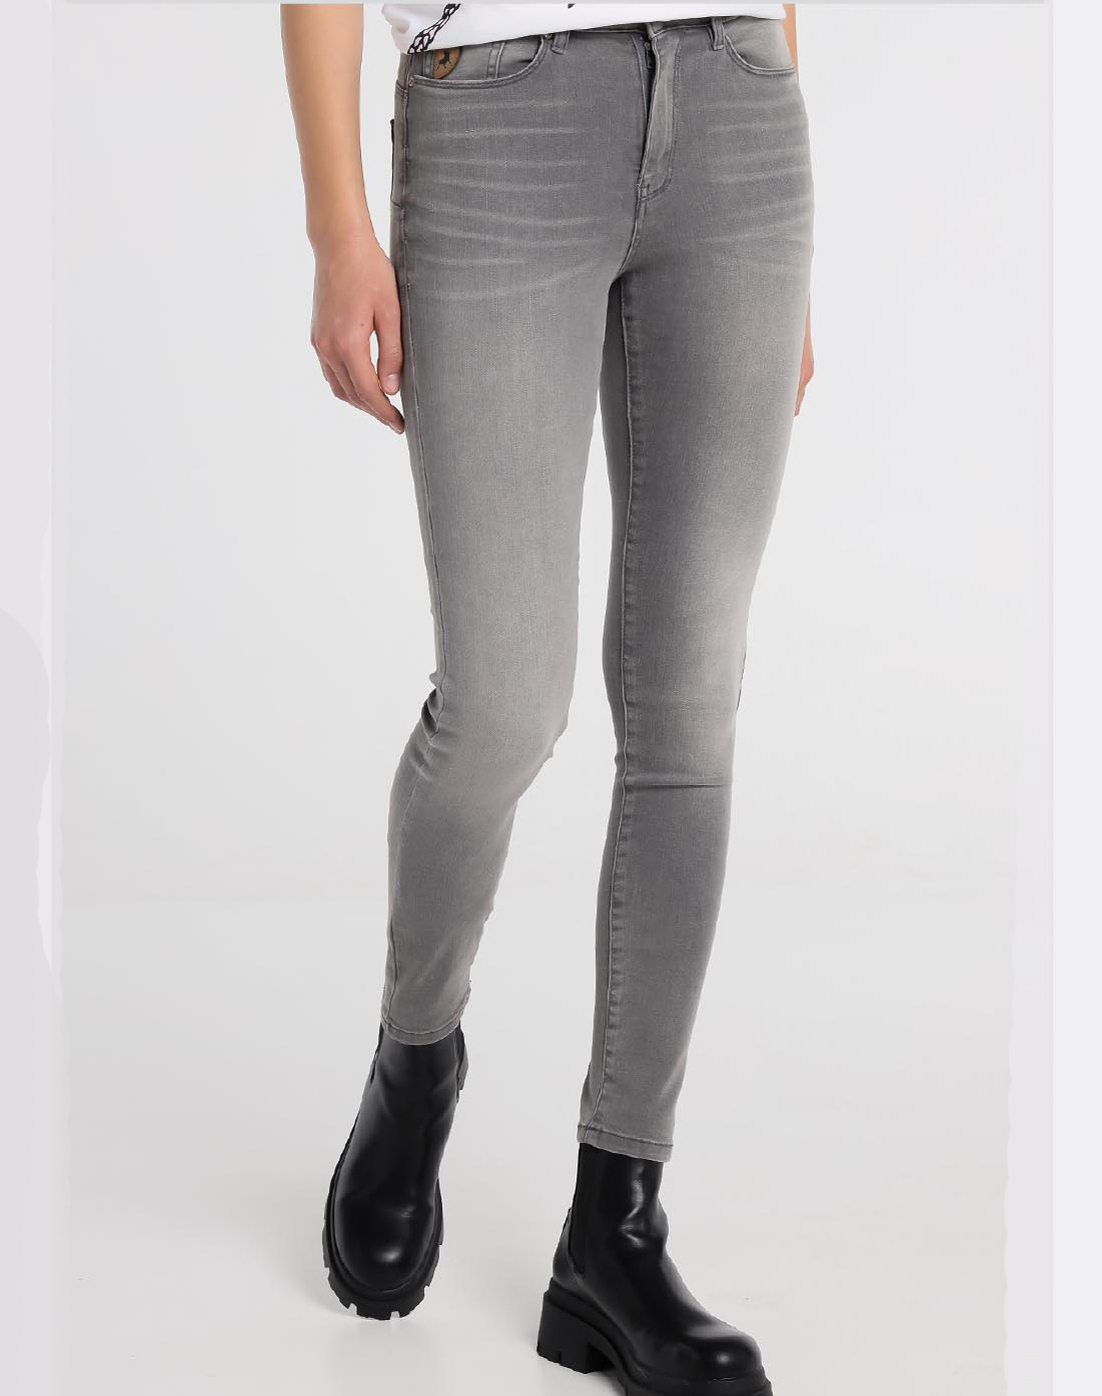 Lois pantalons texans de dona Pushy 20111/980 gris